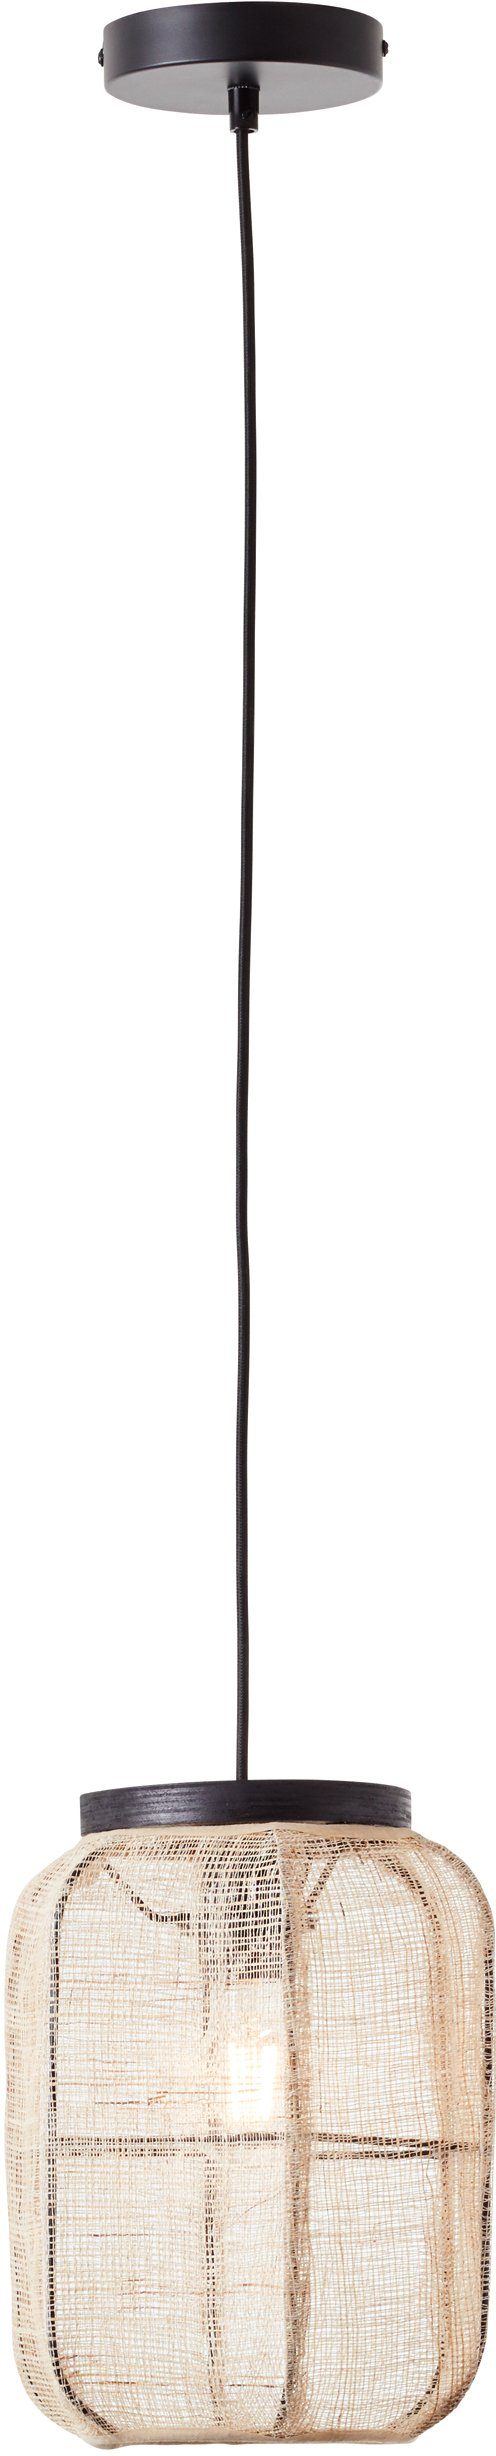 Home affaire Pendelleuchte Rouez, ohne Leuchtmittel, Hängelampe mit 22cm Durchmesser, Schirm aus Textil und Holz | Pendelleuchten